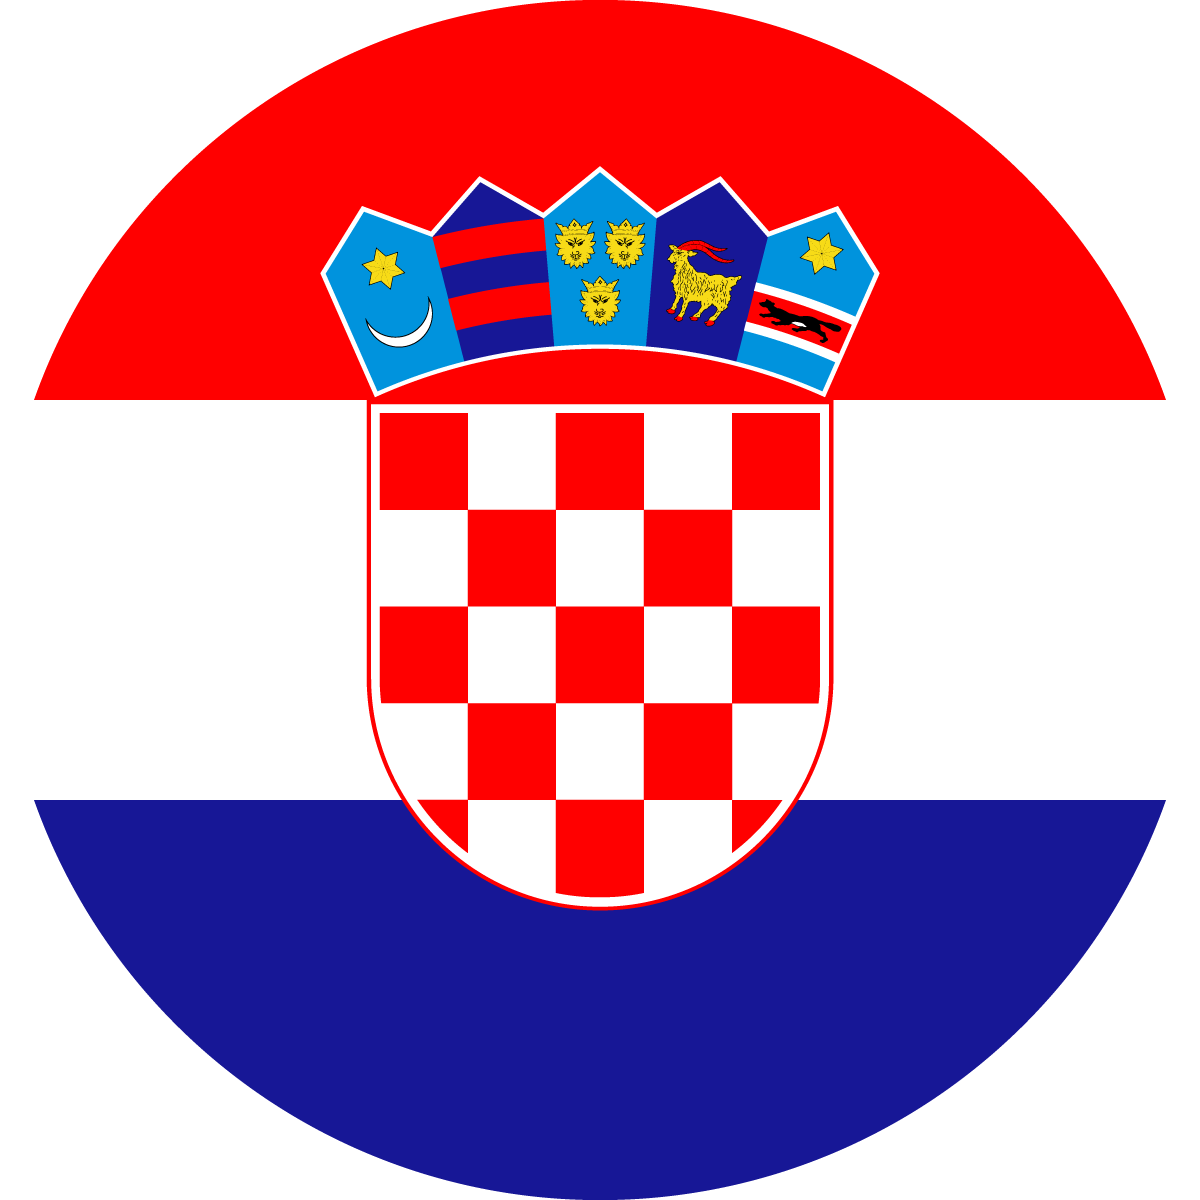 Copy of Copy of Copy of Copy of Copy of Croatia